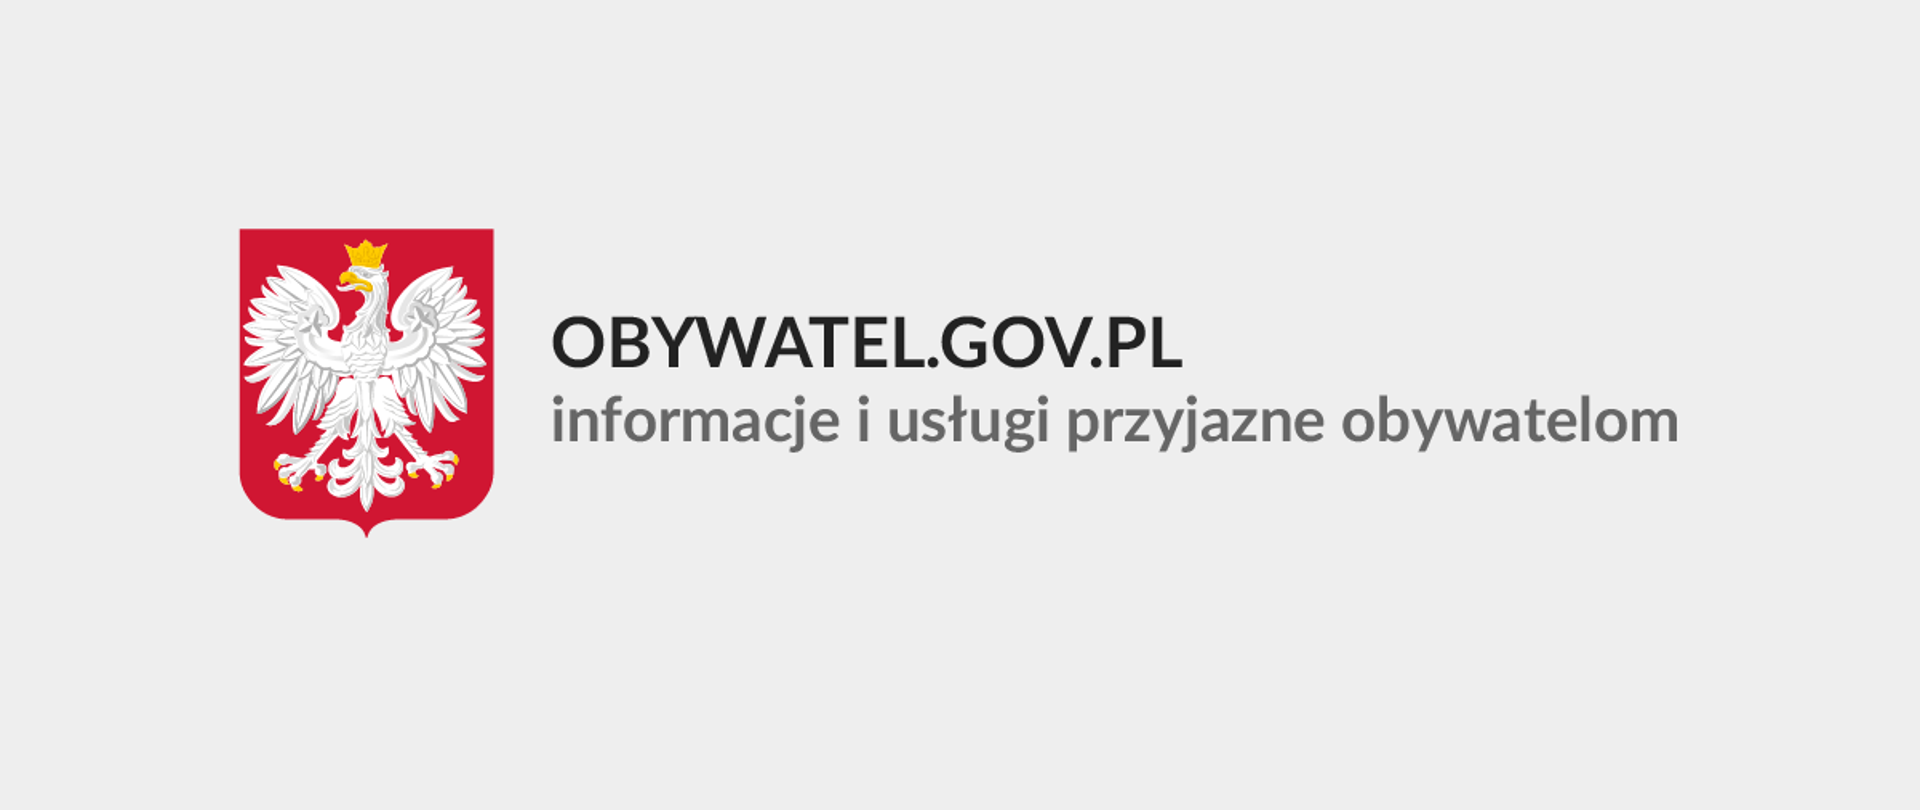 Zdjęcie przedstawia logo platformy obywatel.gov.pl